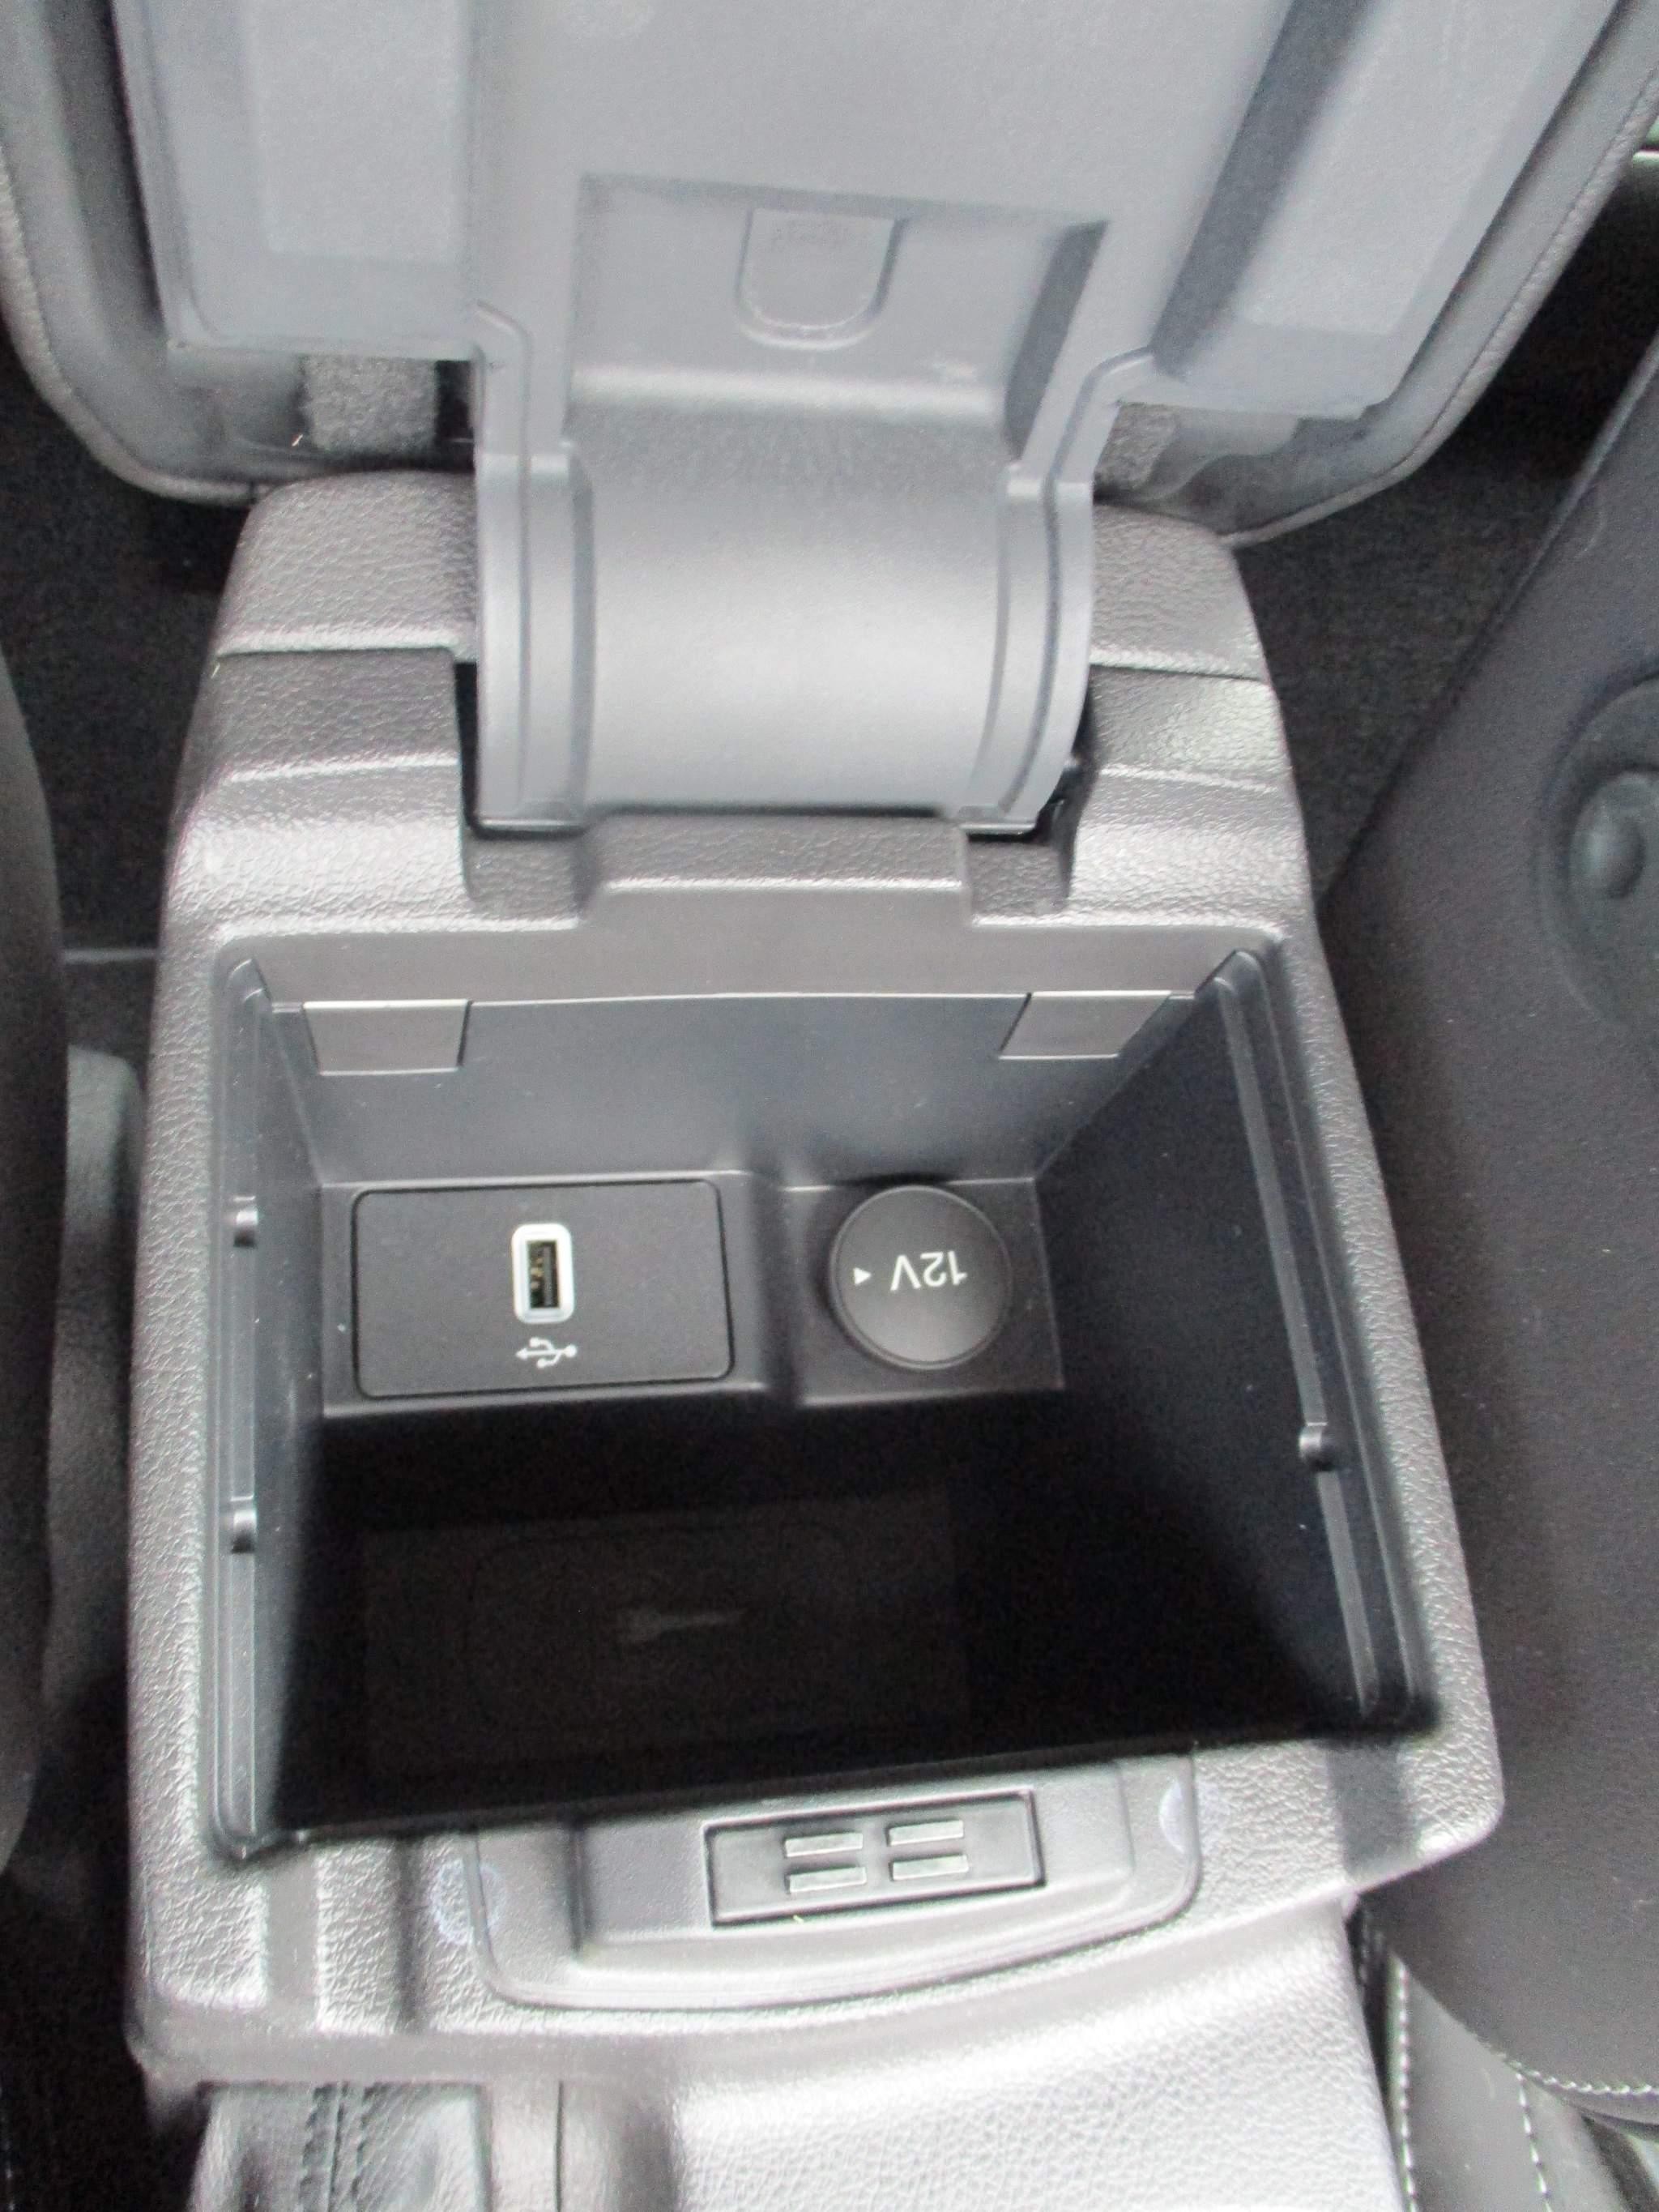 Ford Focus 2.0 TDCi Titanium X Powershift Euro 6 (s/s) 5dr (EG17EFT) image 19